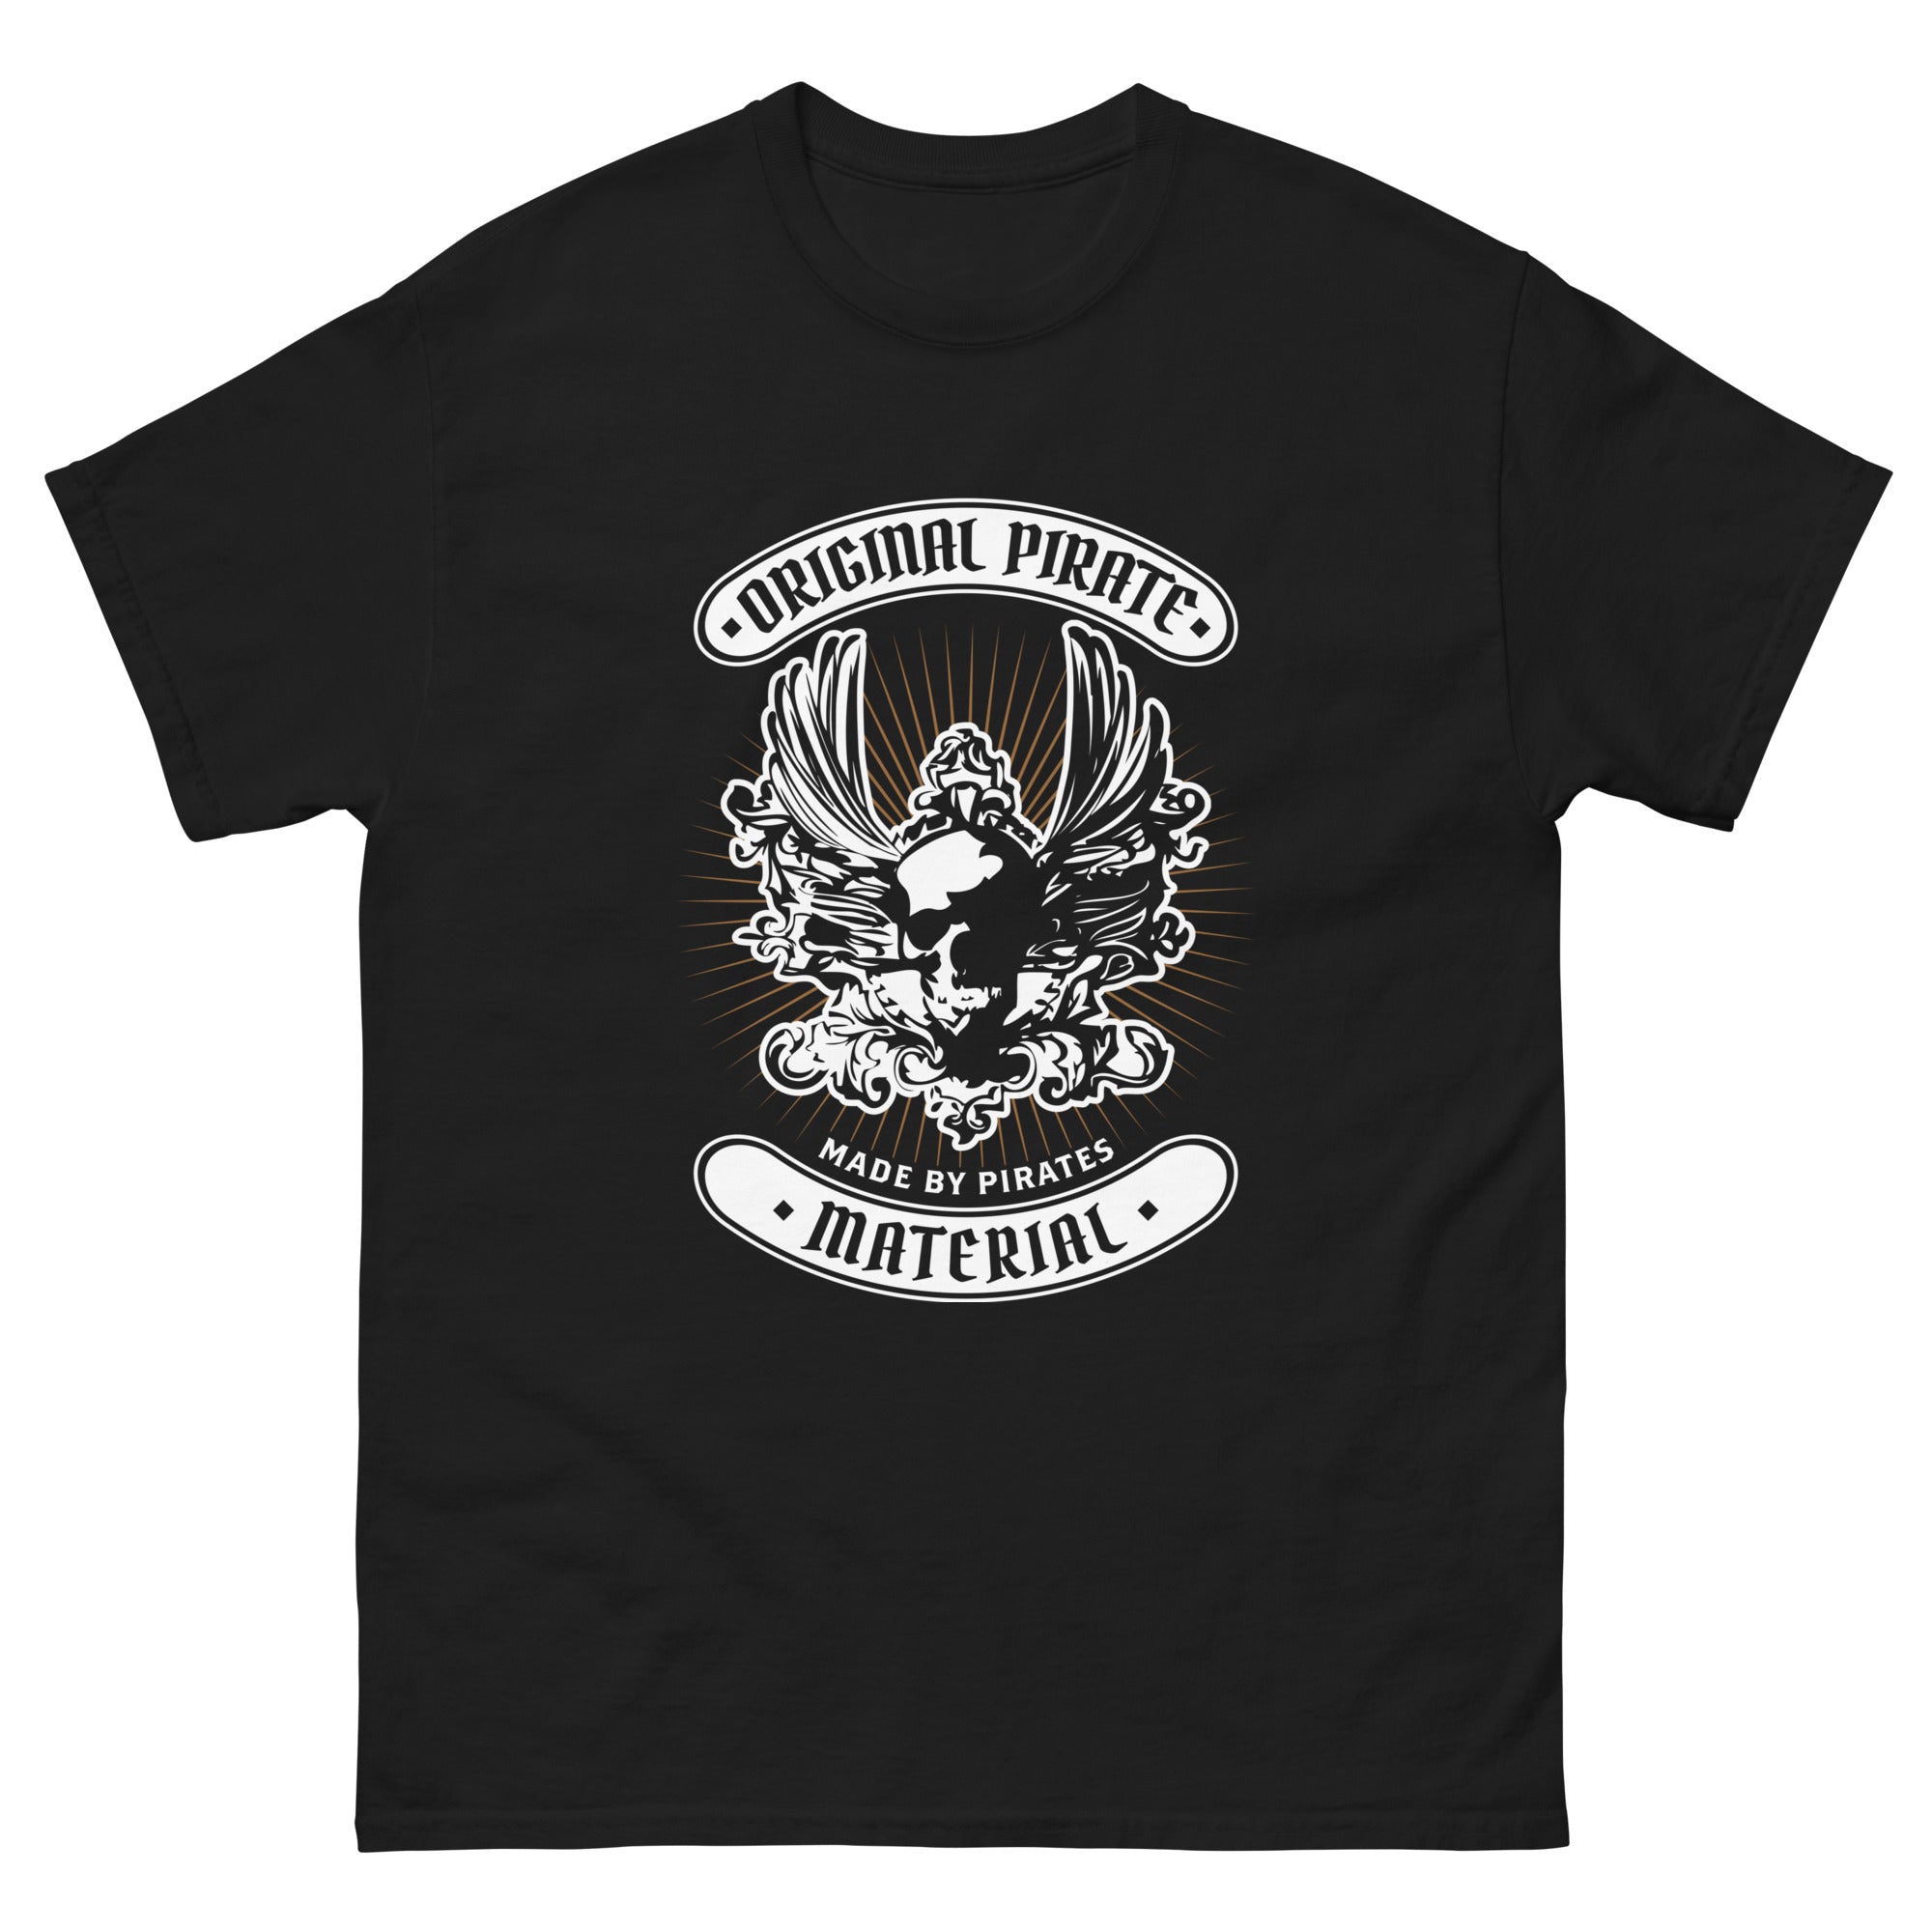 Pirate's Grog T Shirt - 'Original Pirate Material Part 3'